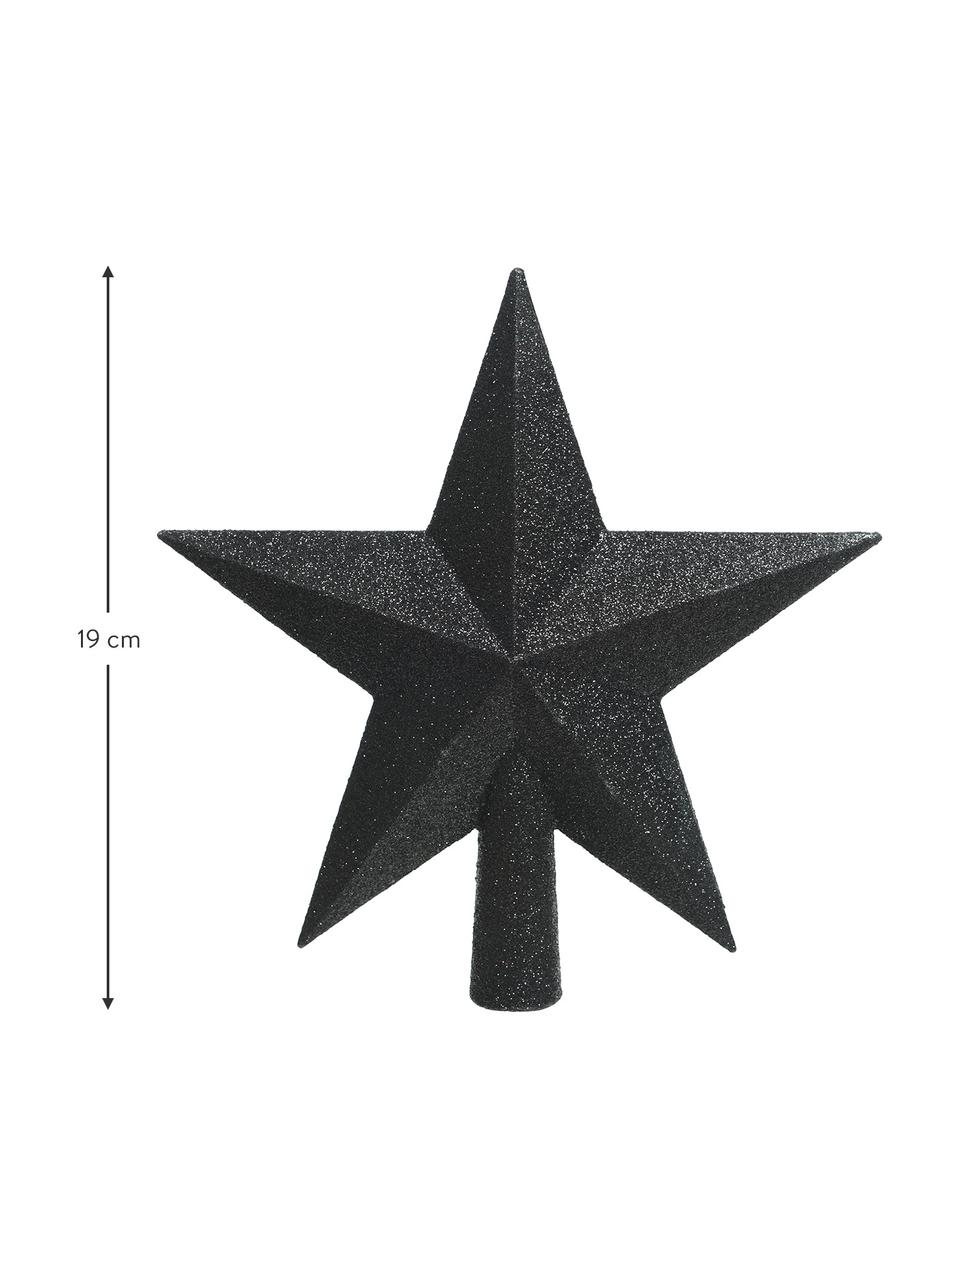 Bruchsichere Weihnachtsbaumspitze Morning Star, Ø 19 cm, Kunststoff, Schwarz, glänzend, B 19 x H 19 cm